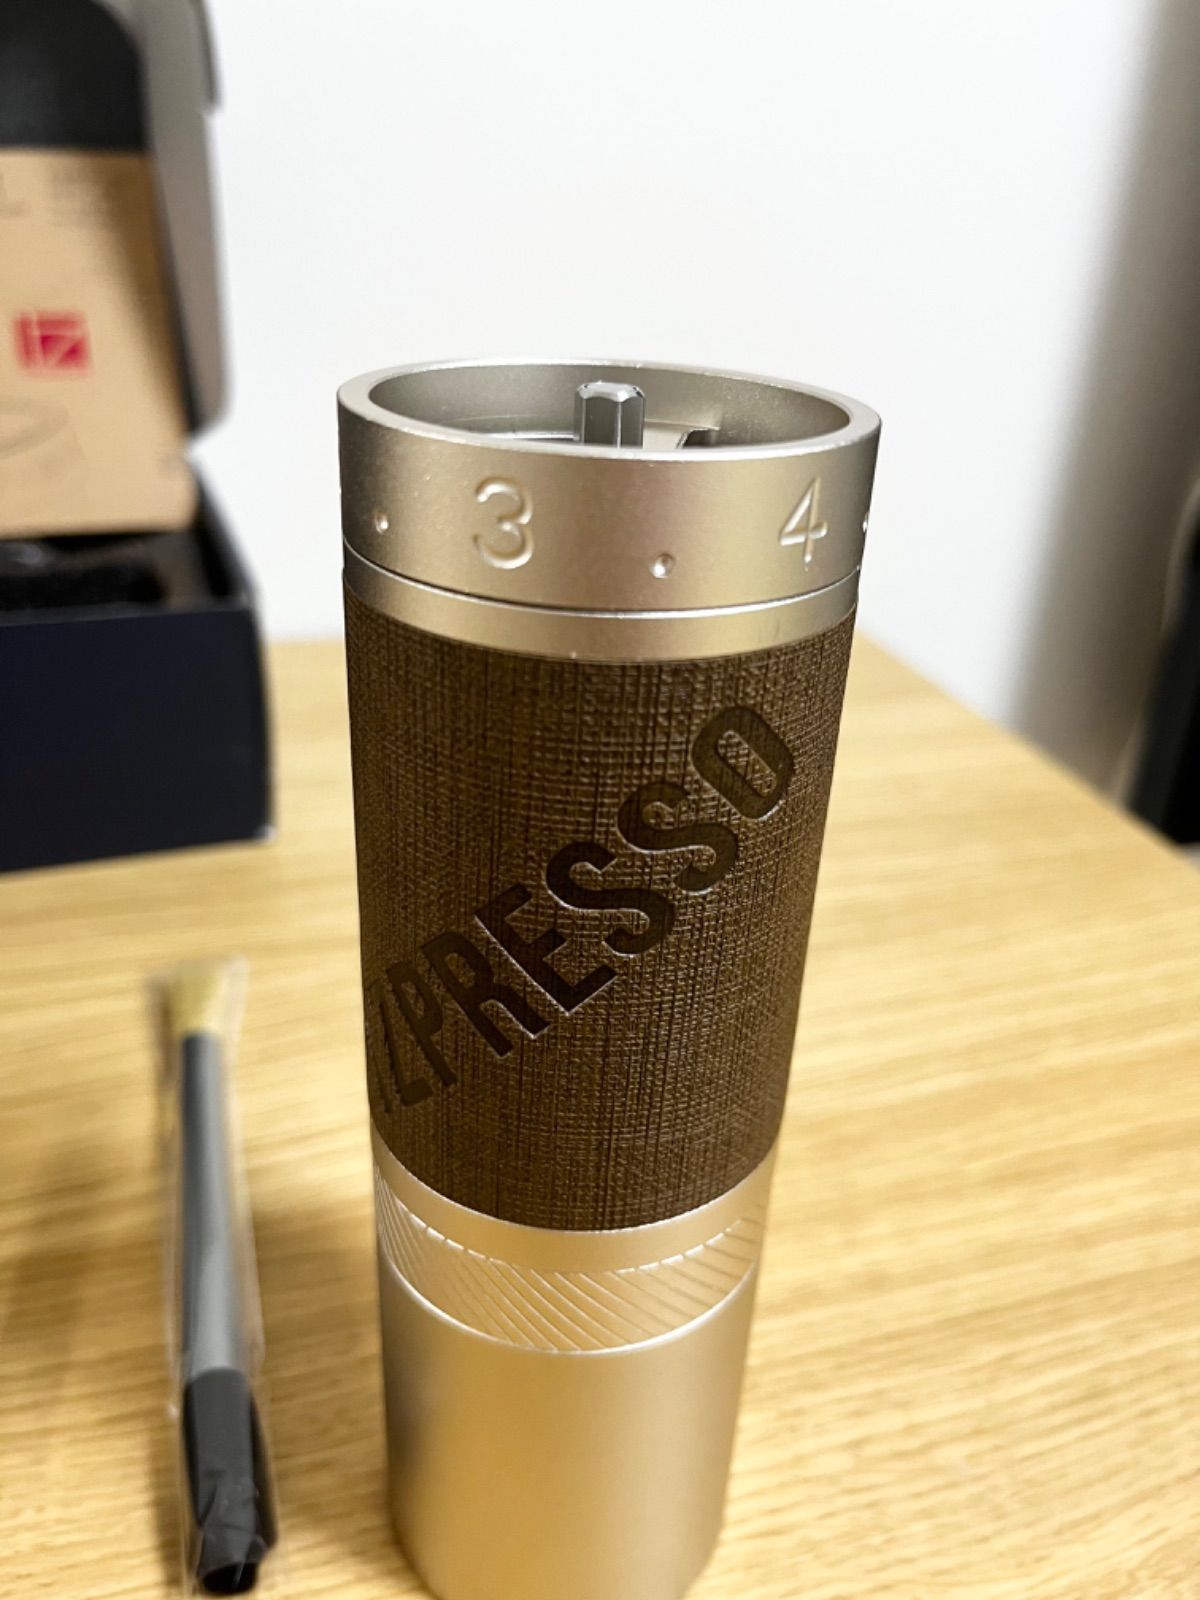 1zpresso 新商品 X-PRO コーヒーミル　グラインダー